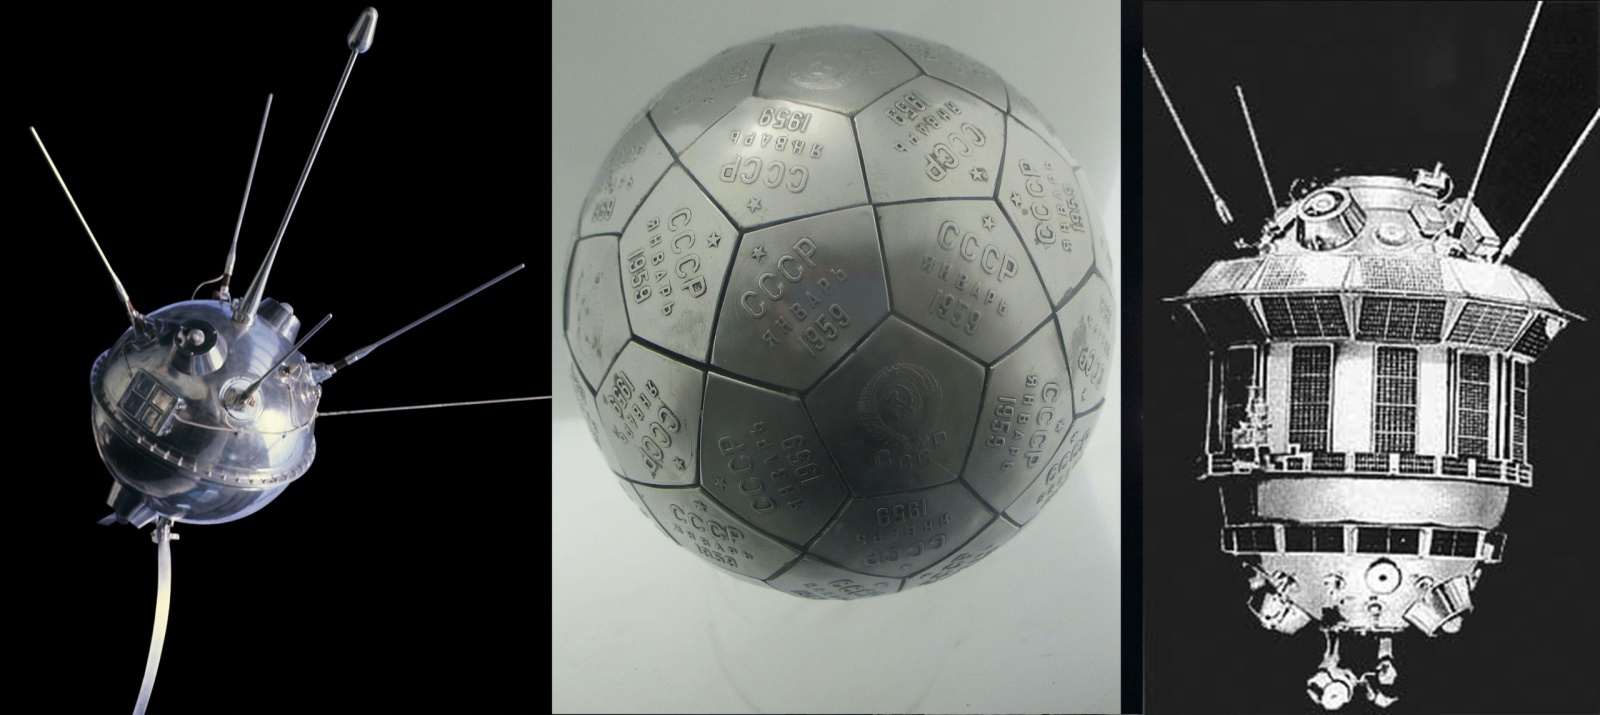 Слева —аппарат Луна-1 набрал вторую космическую но не попал в Луну, посередине — один из двух вымпелов, доставленных в Море Дождей станцией Луна-2, справа — станция Луна-3, сфотографировавшая обратную сторону луны